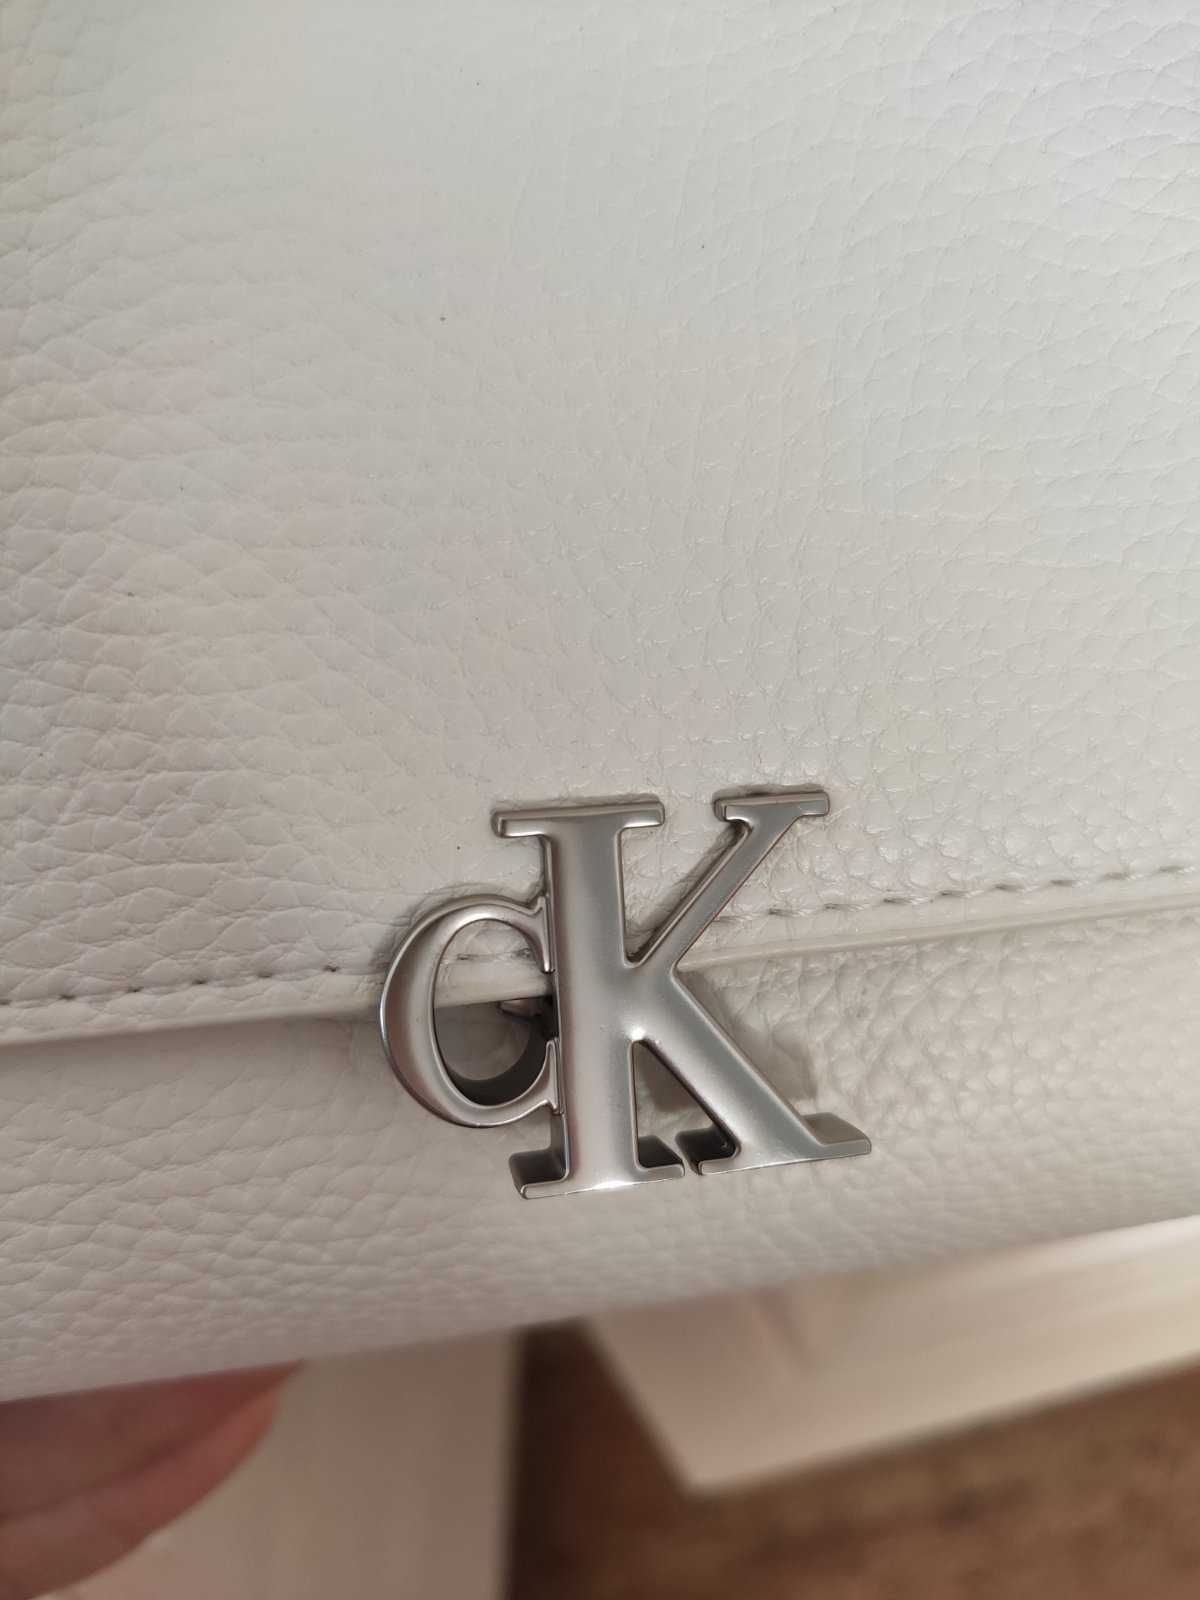 Сумка гаманець, клатч Calvin Klein оригінал, подарунок дівчині